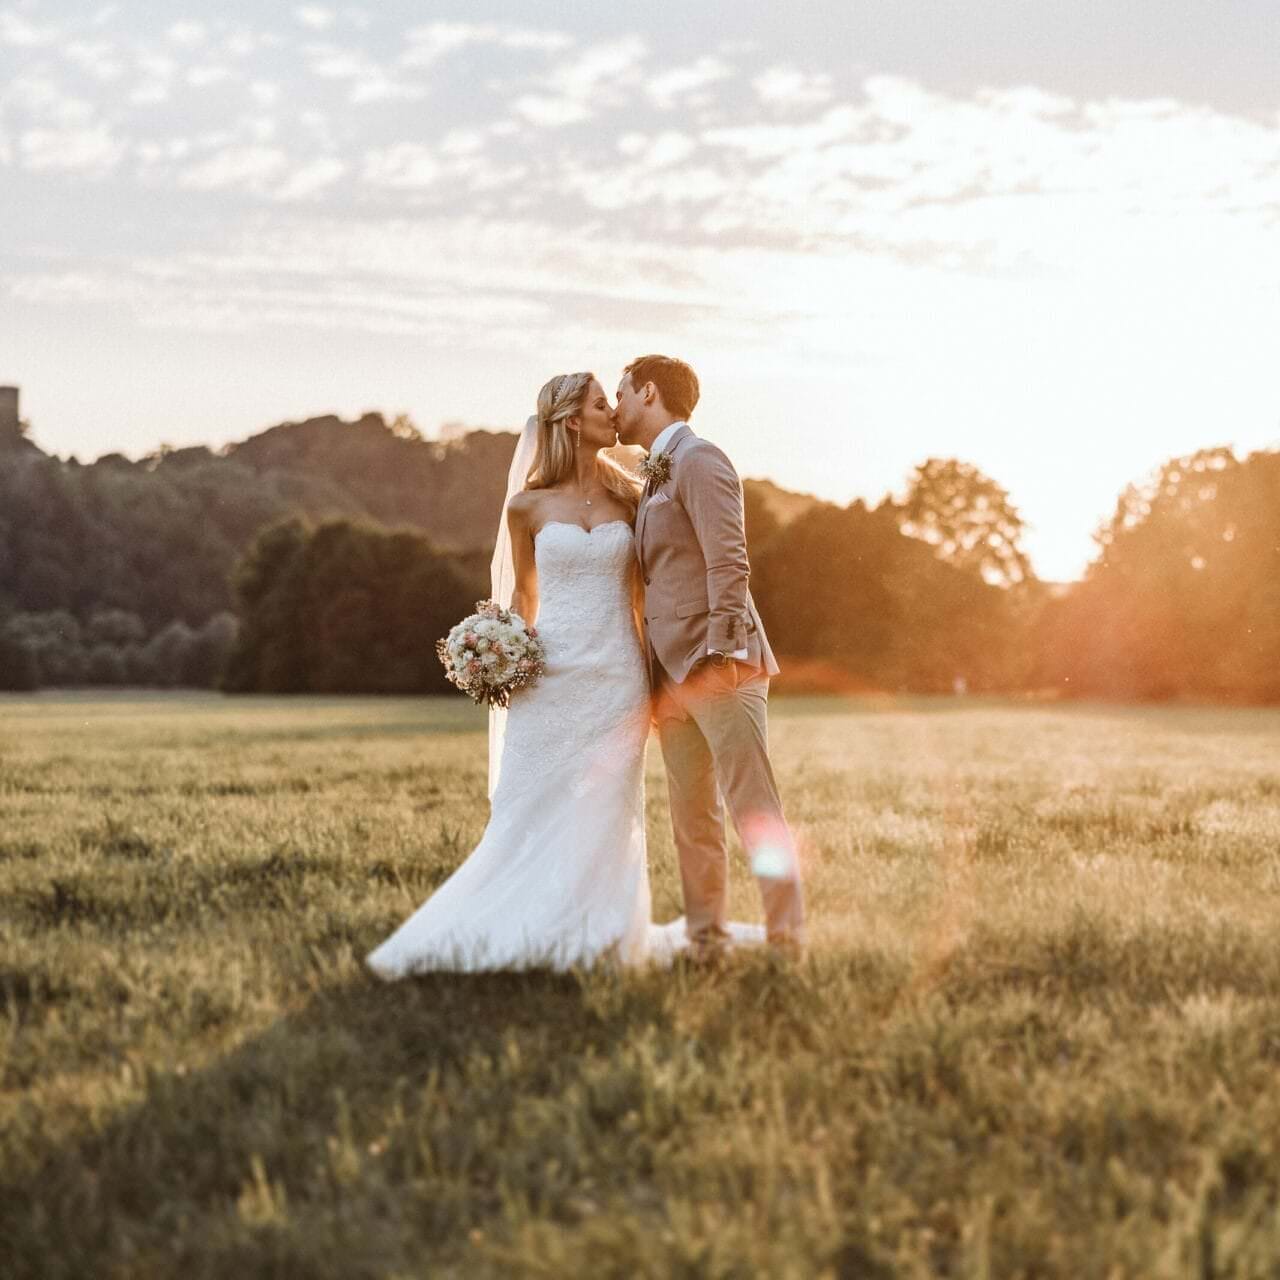 Hochzeitsfotograf Recklinghausen Hochzeit Heiraten Hochzeitsfotos - Hochzeitspaar küsst sich auf einer Wiese bei Sonnenuntergang. Bräutigam hat seine linke Hand in der Hosentasche. Die Braut hält ihren Blumenstrauß in der rechten Hand fest. Im Hintergrund ist Wald zu erkennen